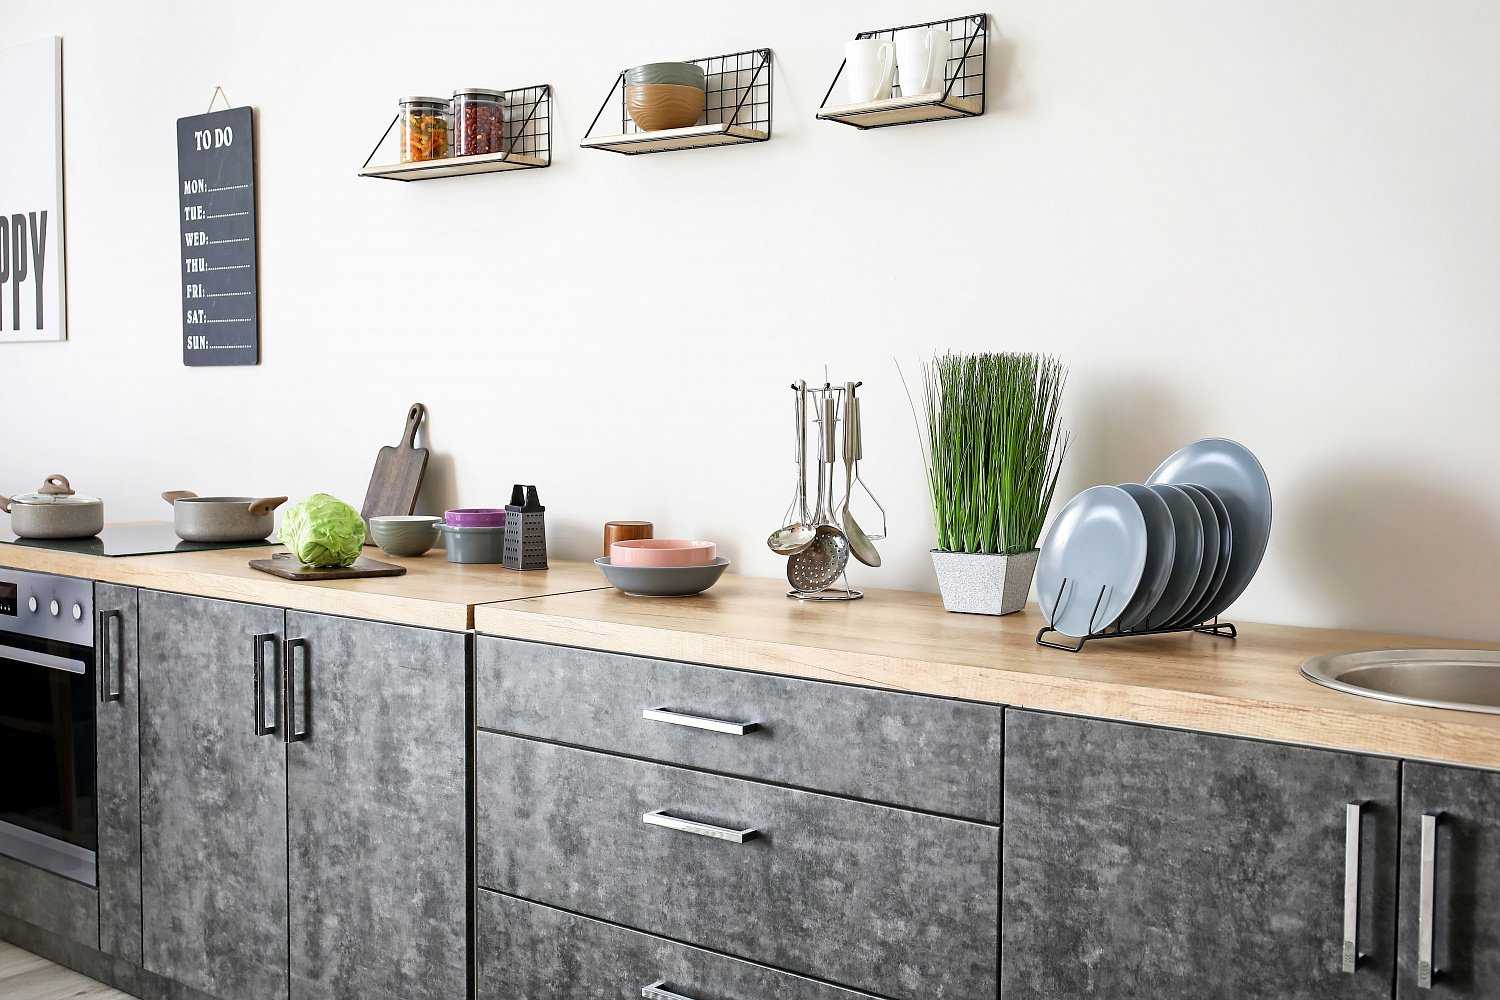 Кухня без верхних шкафов - дизайн одноярусной кухни | фото